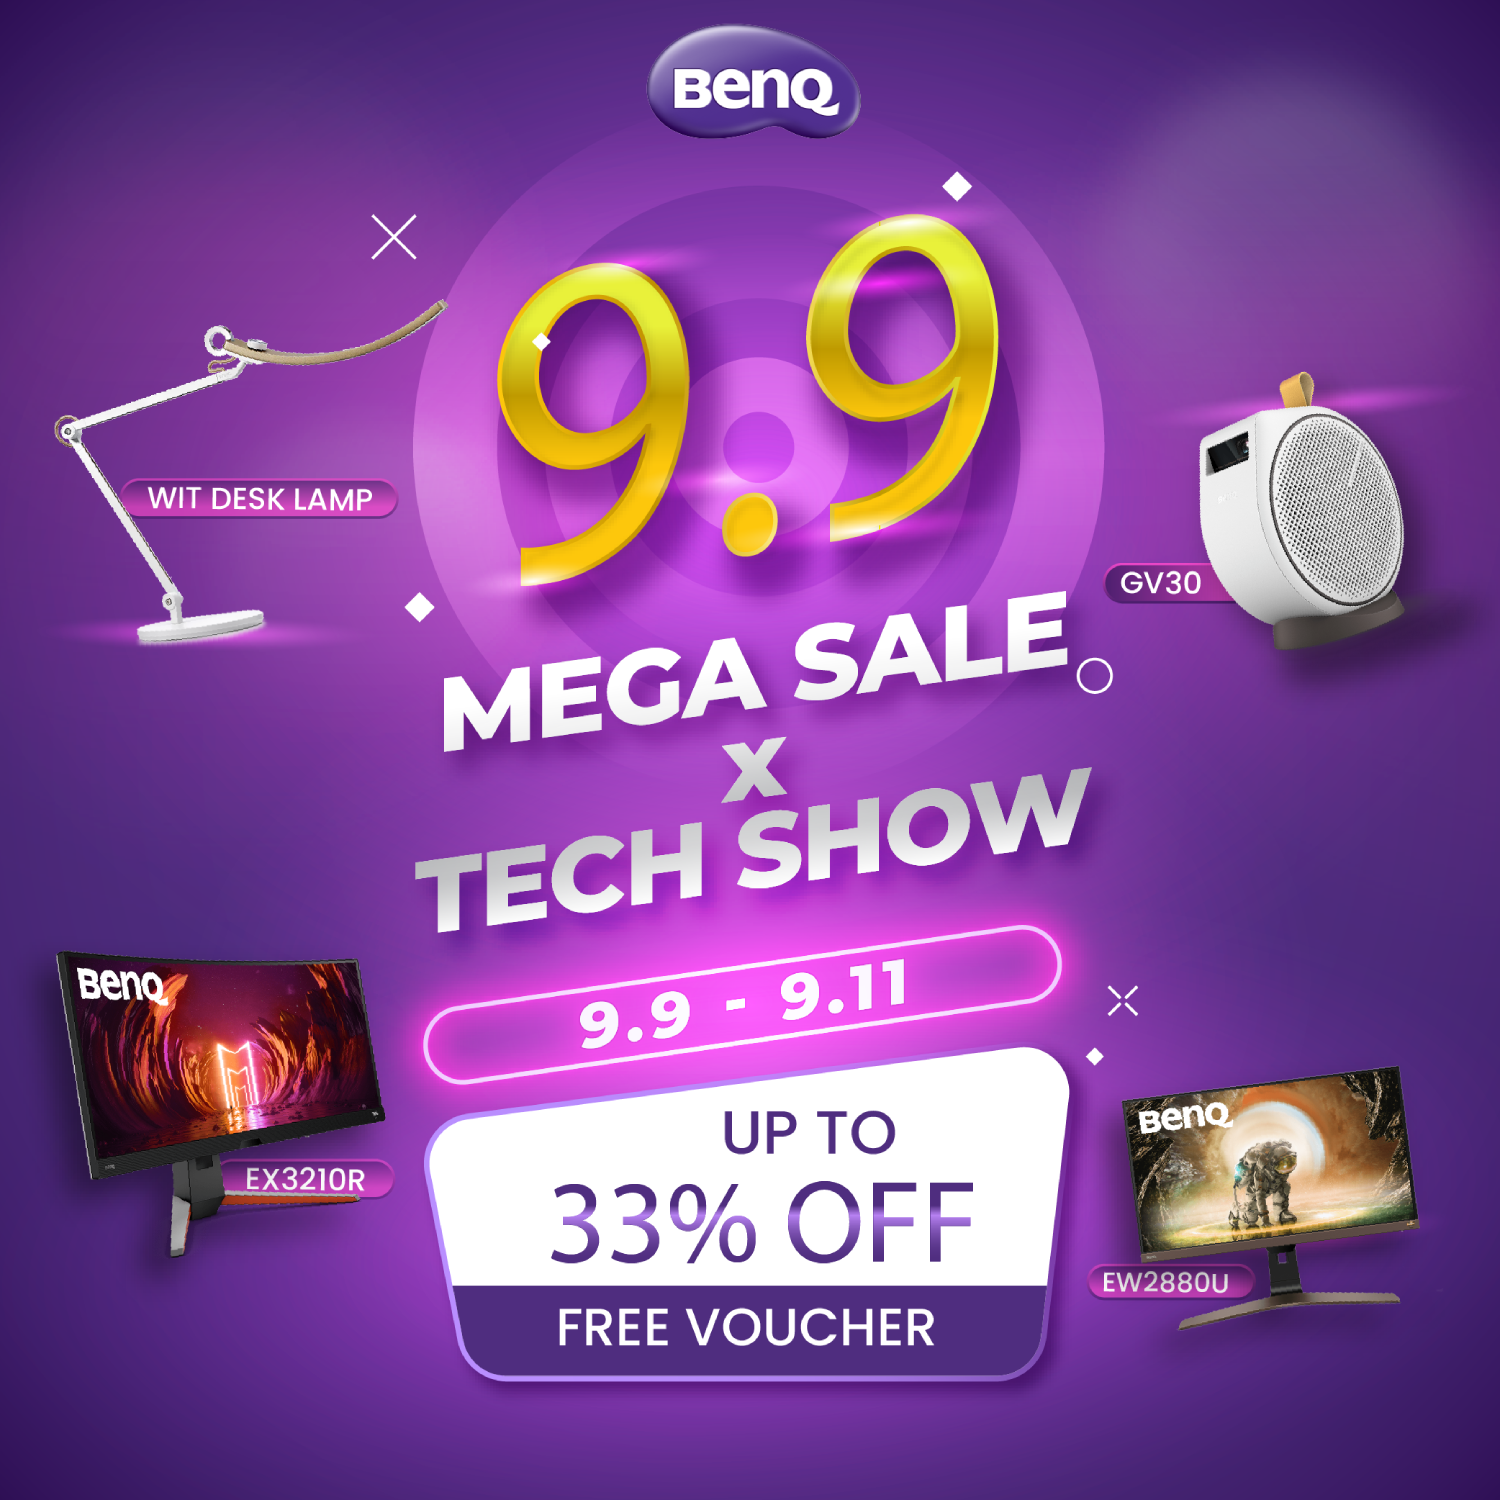 BenQ 9.9 Mega Sale Up to 33% off